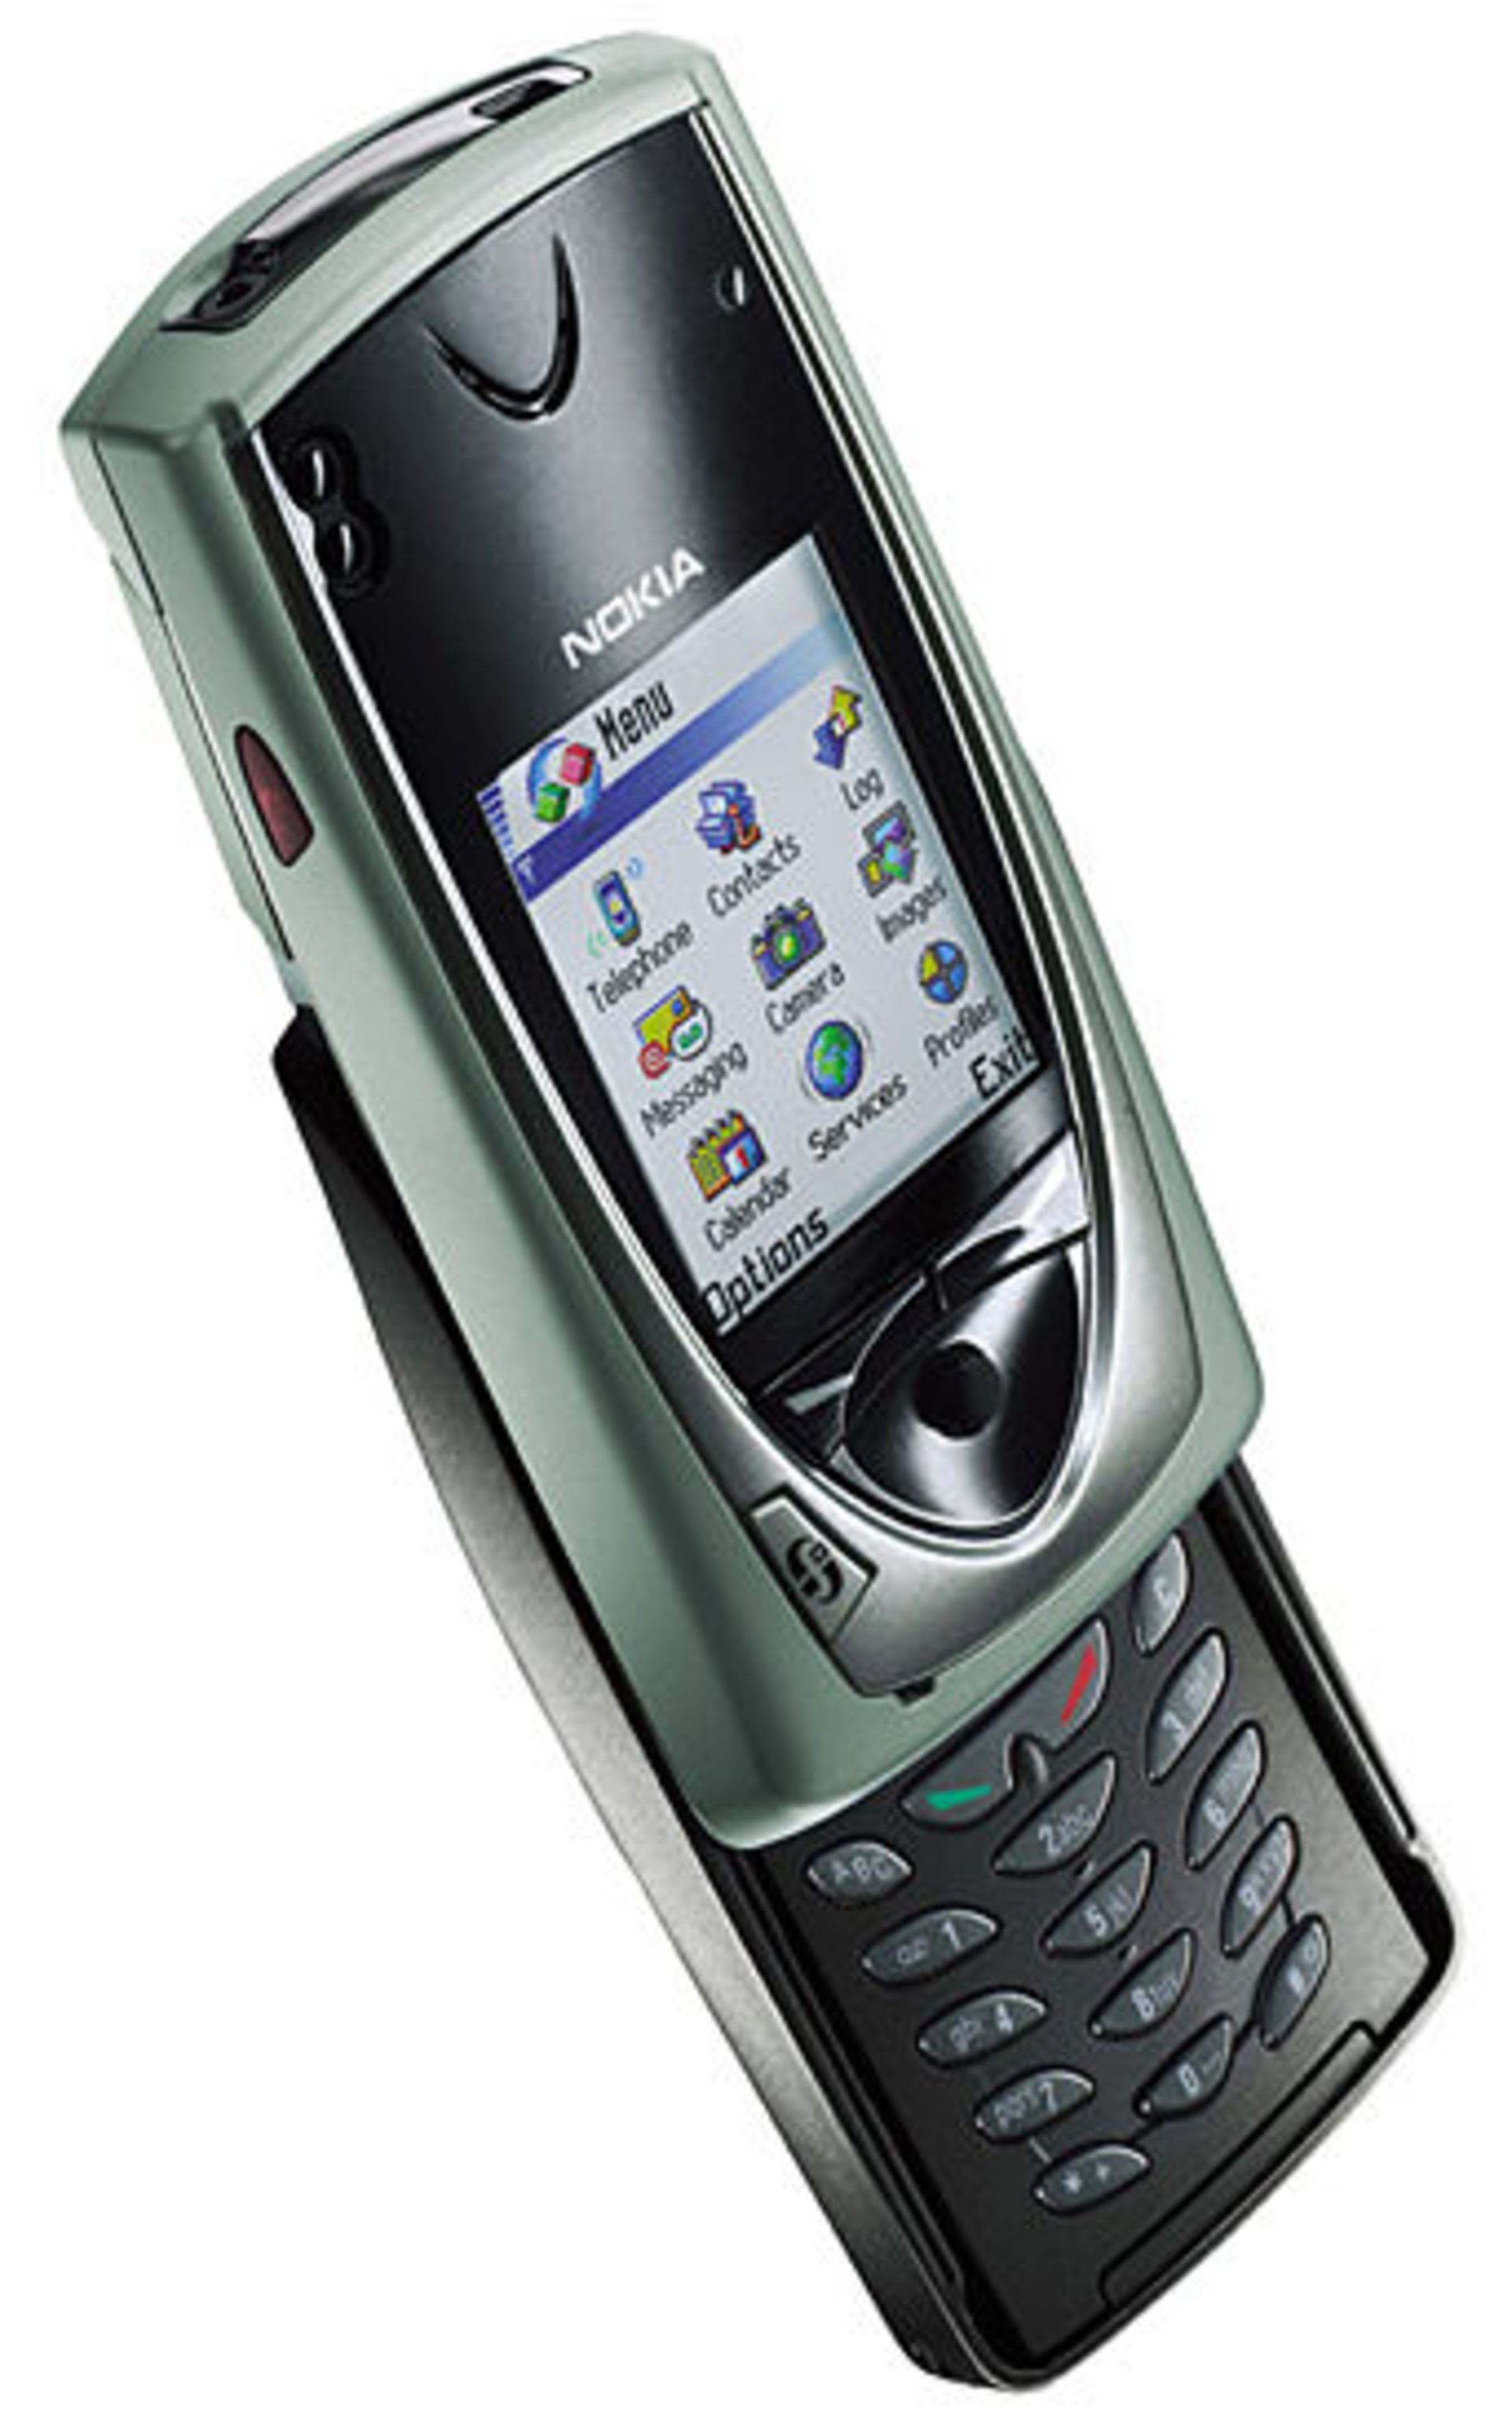 مرجع متخصصين ايران Nokia 7650